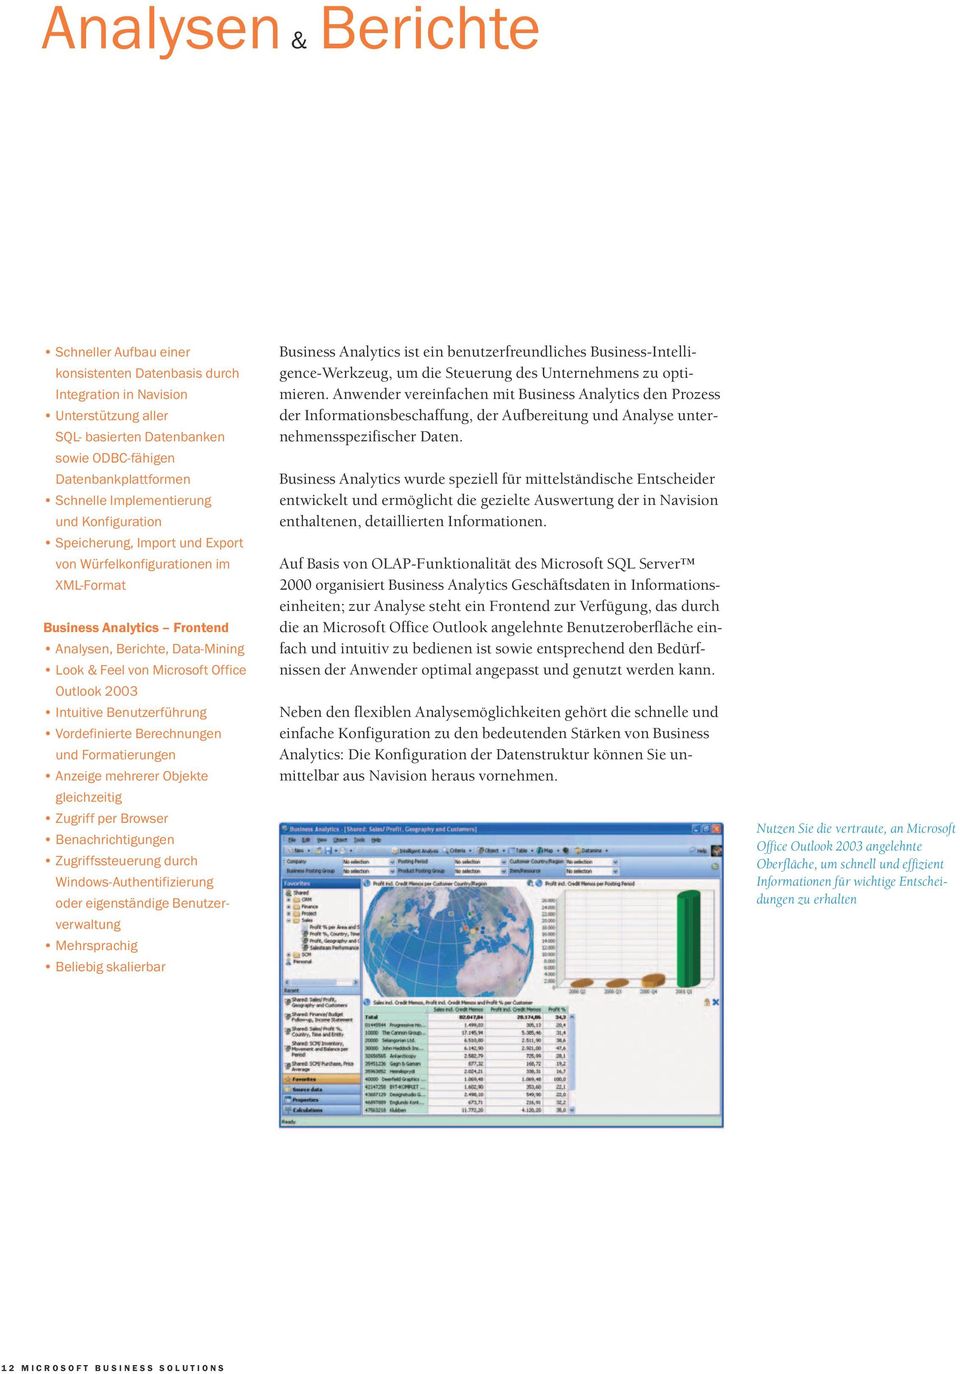 Outlook 2003 Intuitive Benutzerführung Vordefinierte Berechnungen und Formatierungen Anzeige mehrerer Objekte gleichzeitig Zugriff per Browser Benachrichtigungen Zugriffssteuerung durch